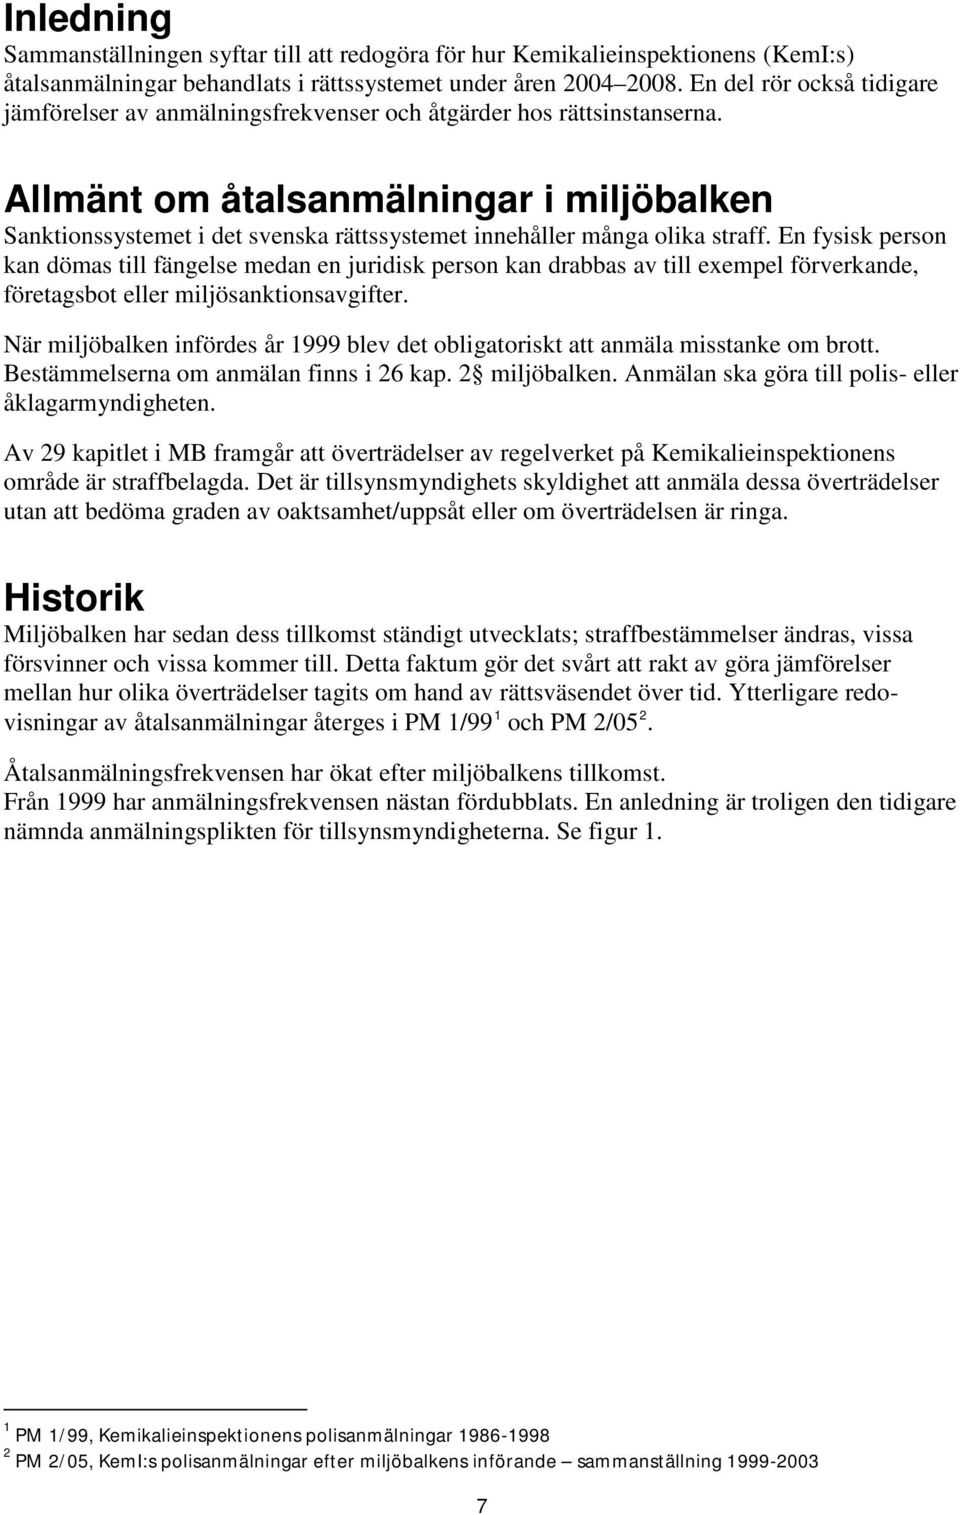 Allmänt om åtalsanmälningar i miljöbalken Sanktionssystemet i det svenska rättssystemet innehåller många olika straff.